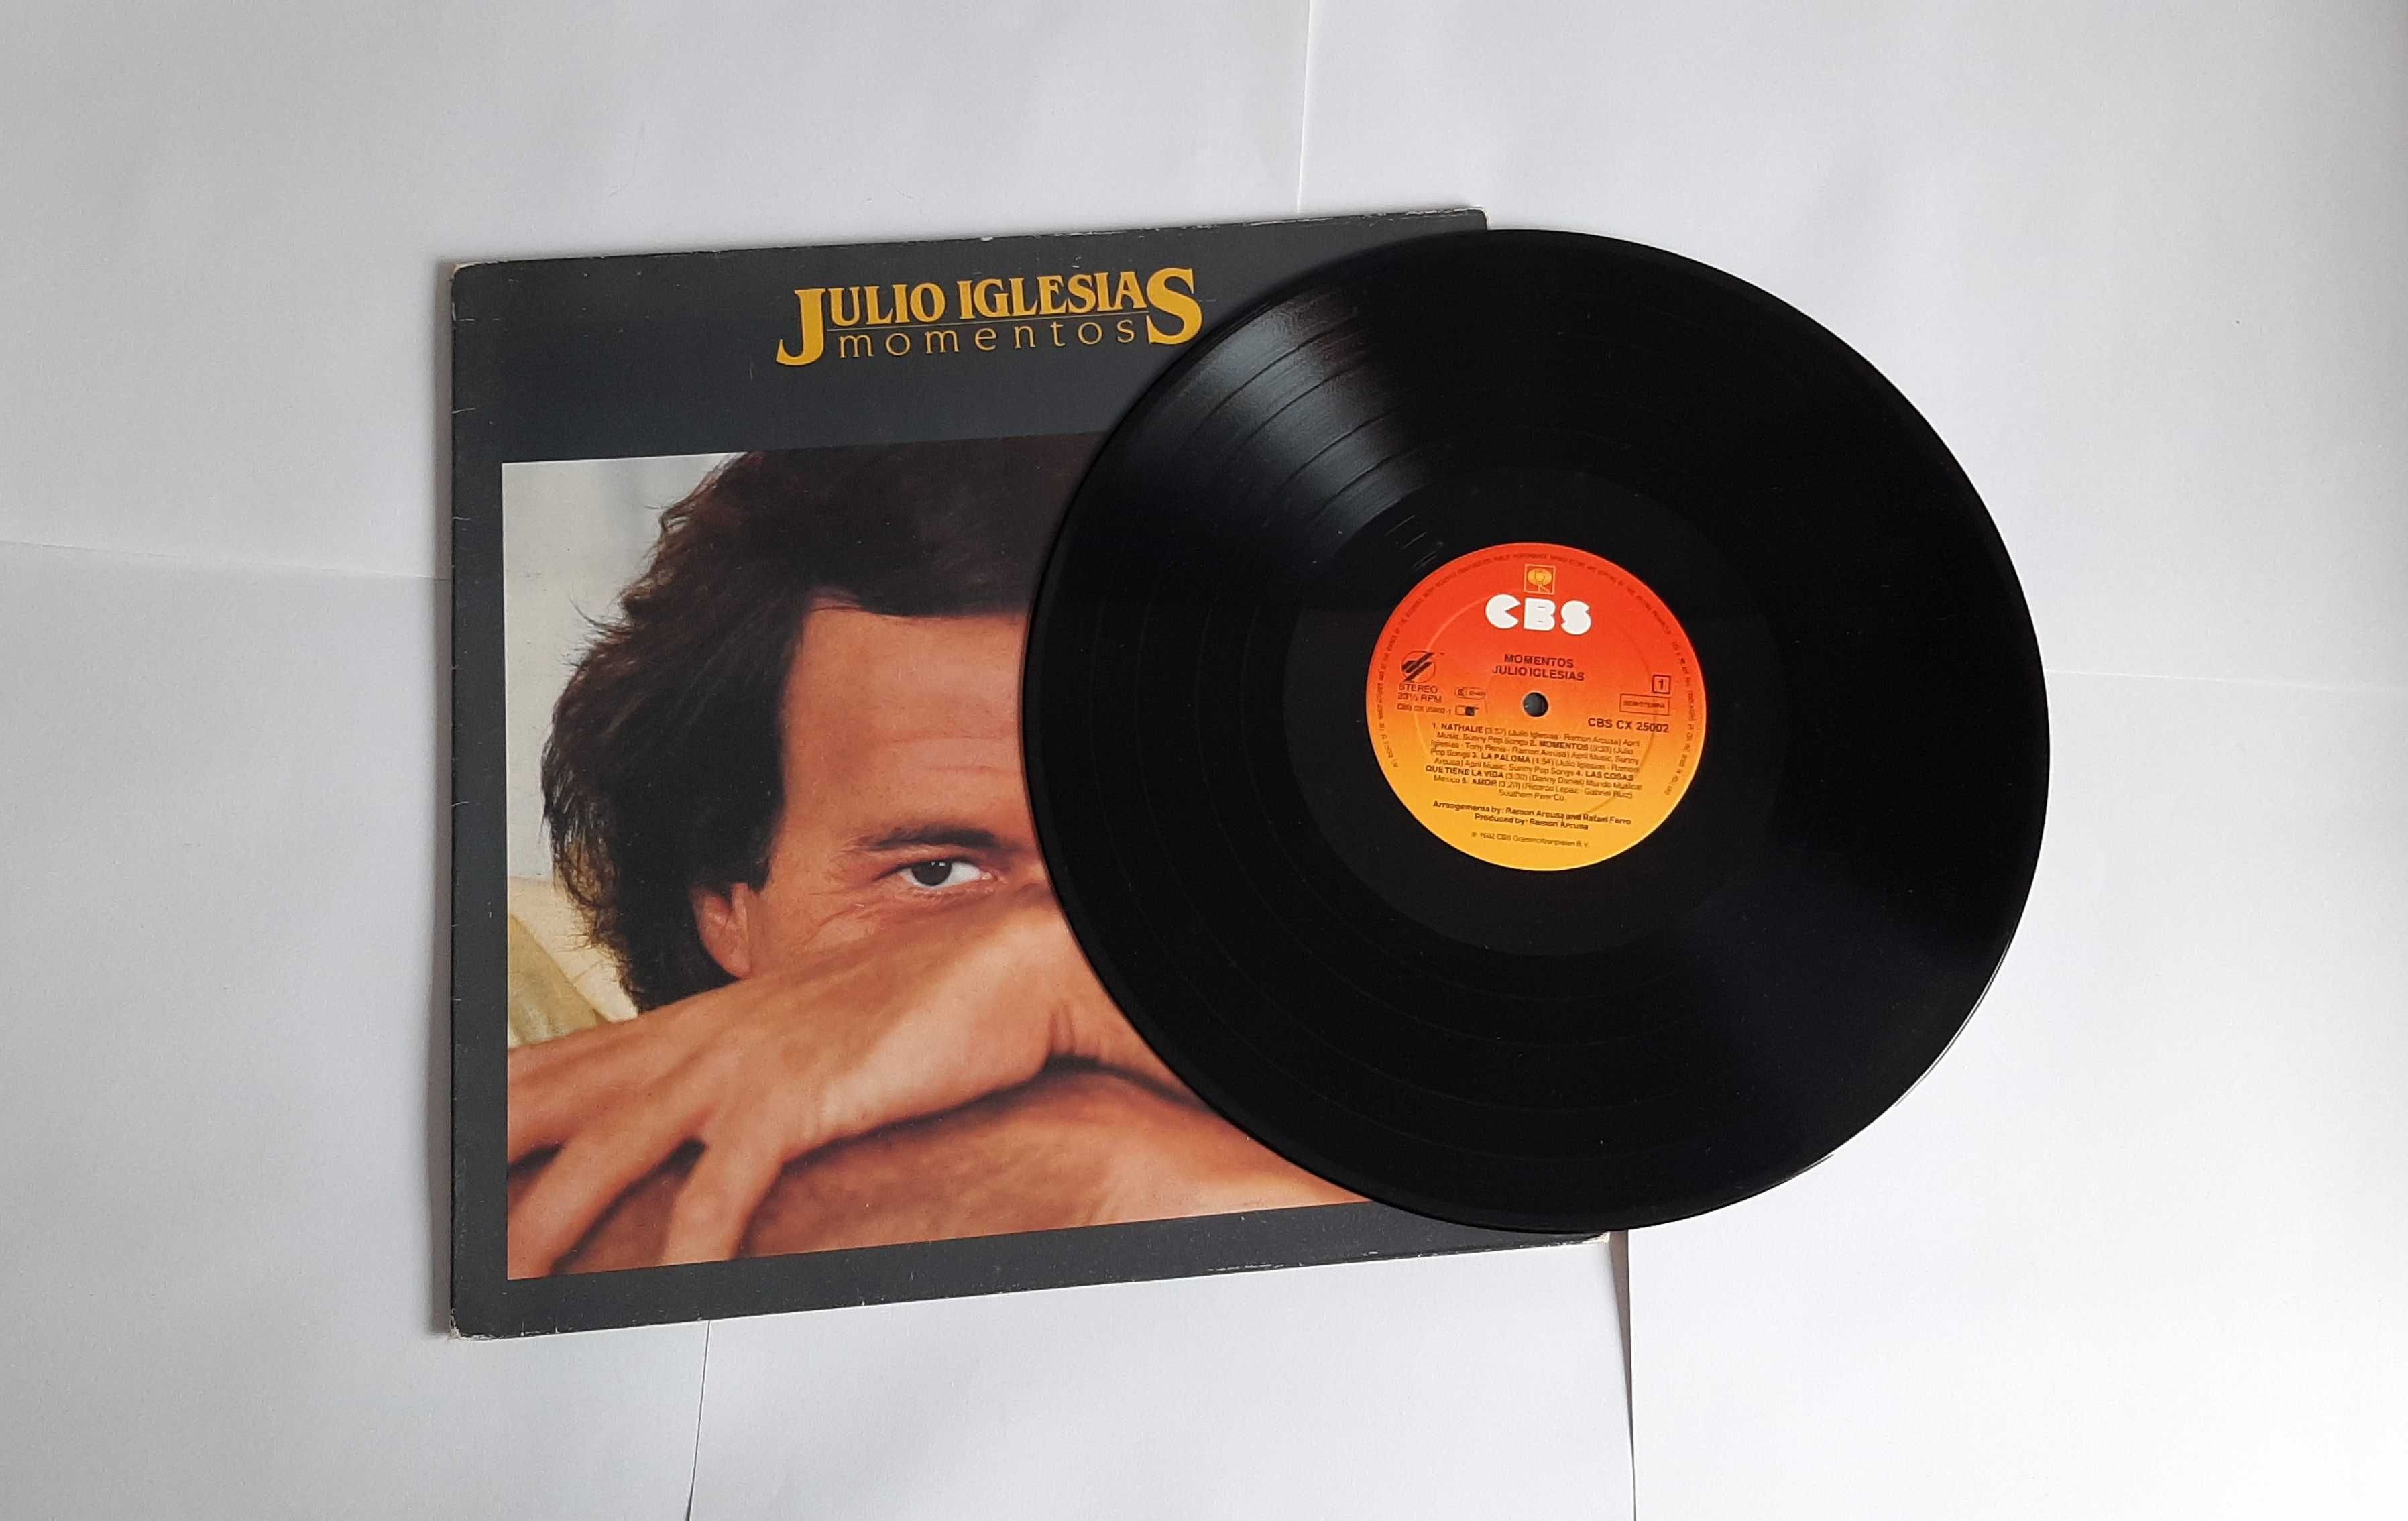 Julio Iglesias – Momentos (1982, Vinyl)